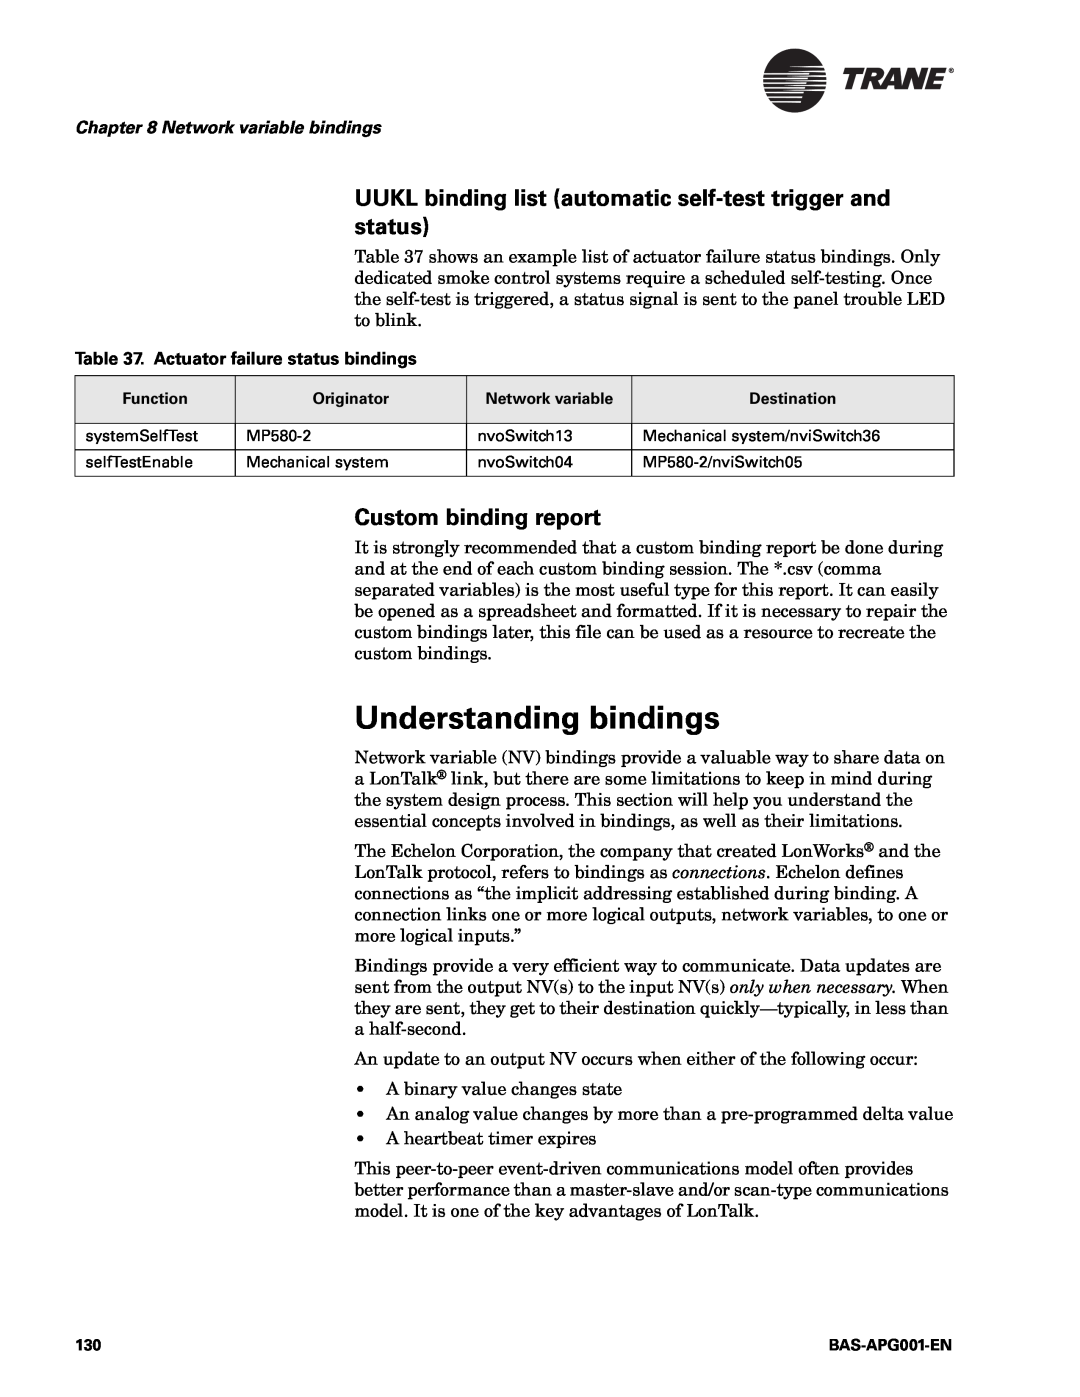 Trane BAS-APG001-EN manual Understanding bindings, Custom binding report, Network variable bindings 